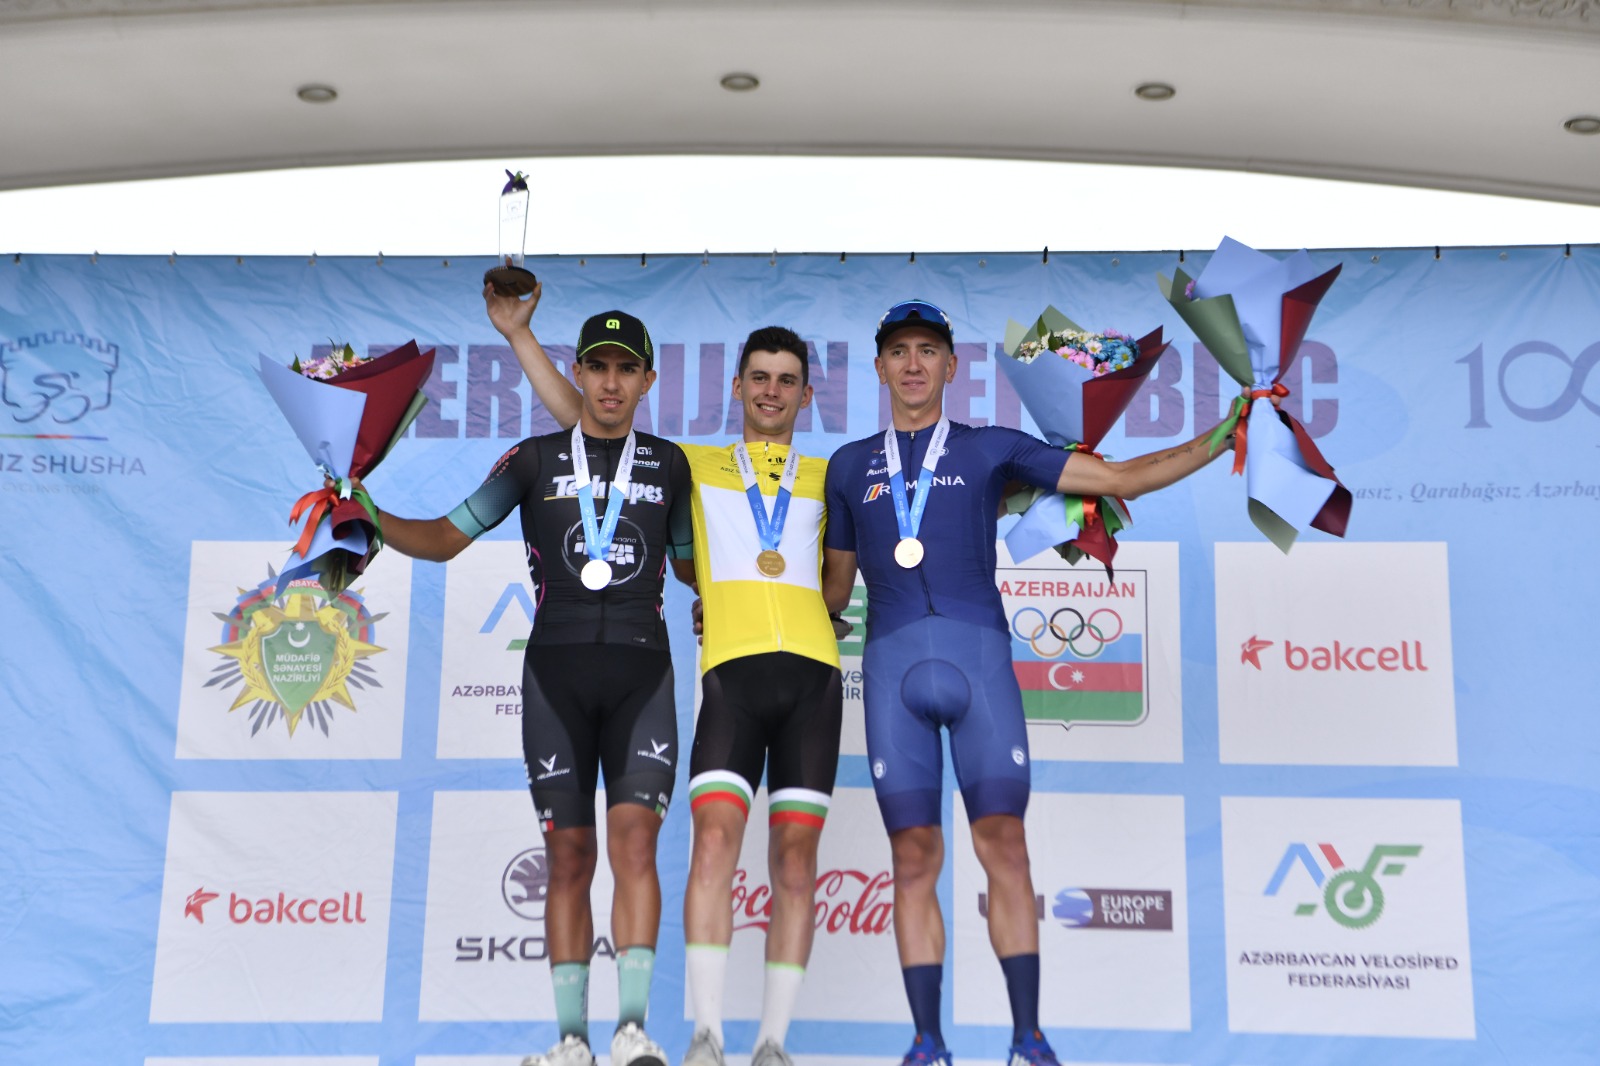 "Əziz Şuşa” beynəlxalq velosiped yarışının birinci mərhələsi başa çatıb